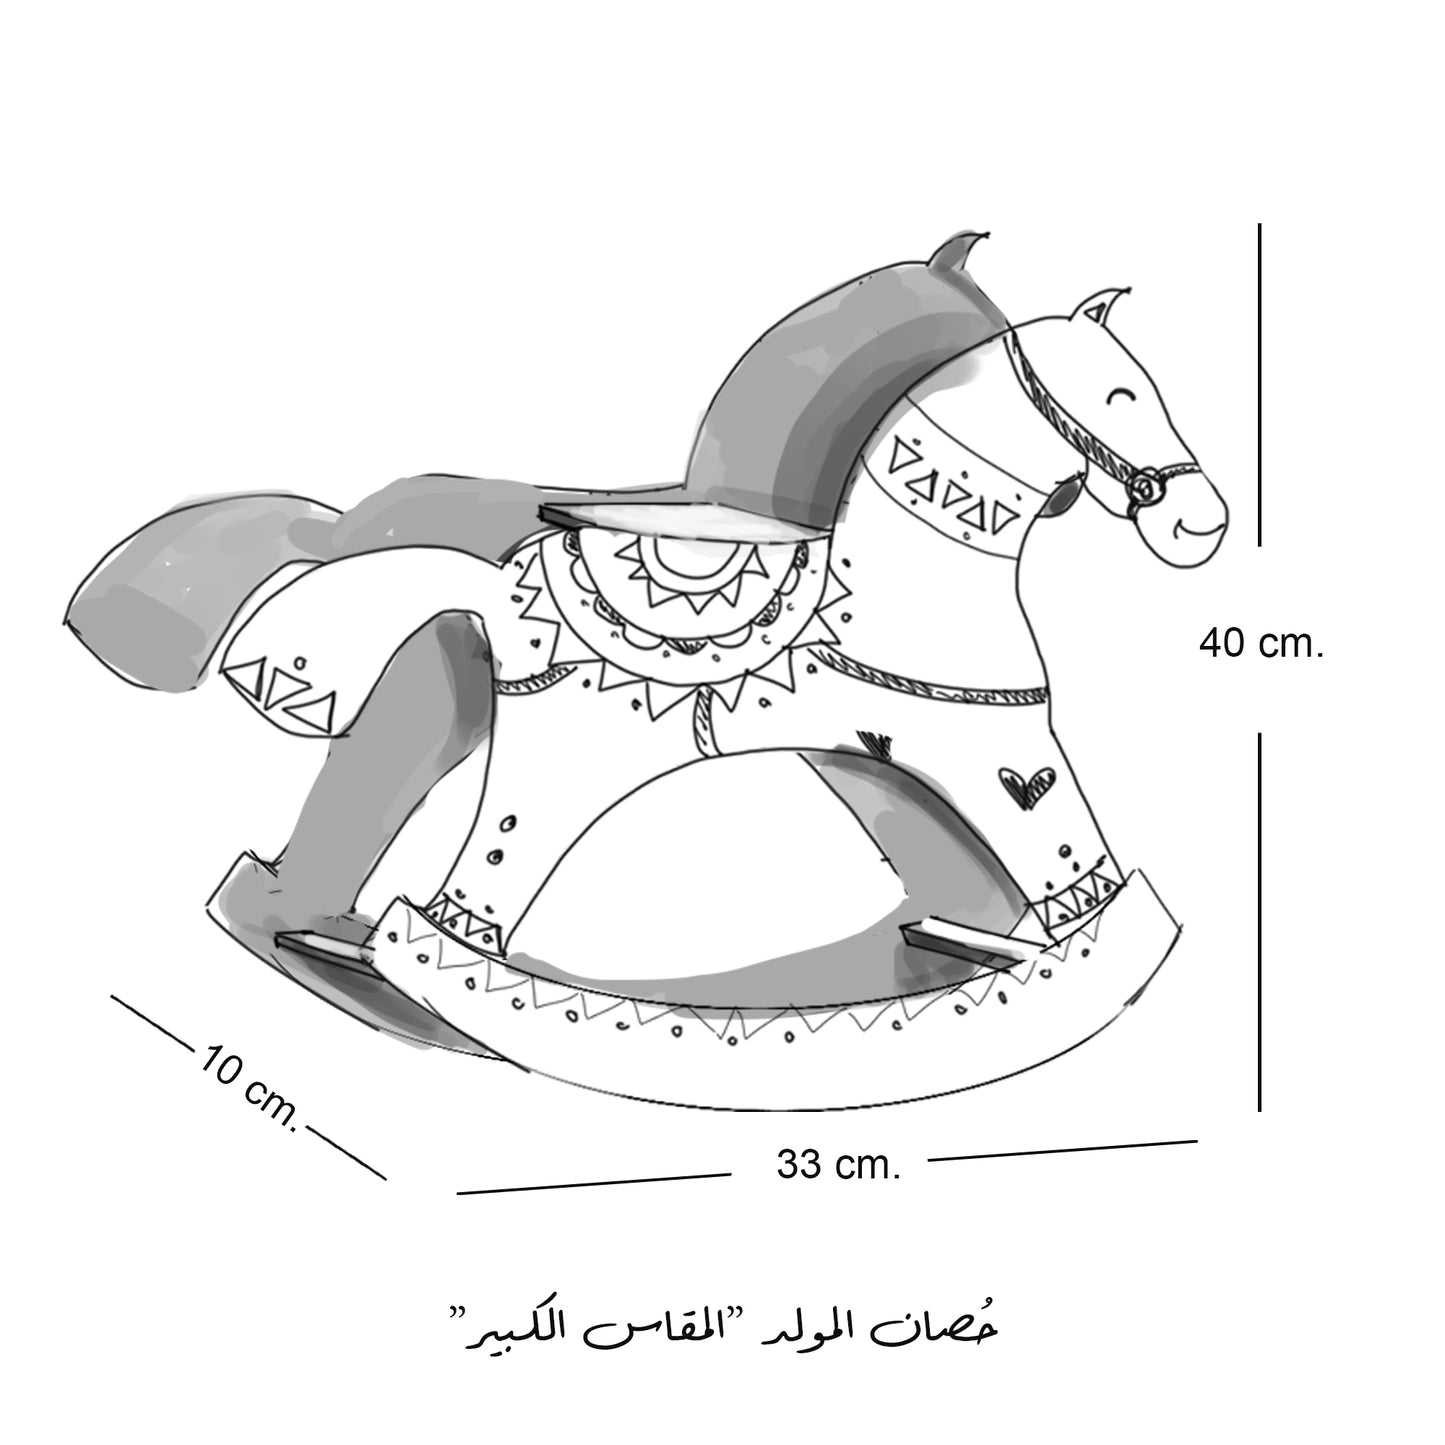 حُصان المولّد -مقاس كبير- ٥.٥*٣٧*٣٣ سم مولد ٢٠٢١